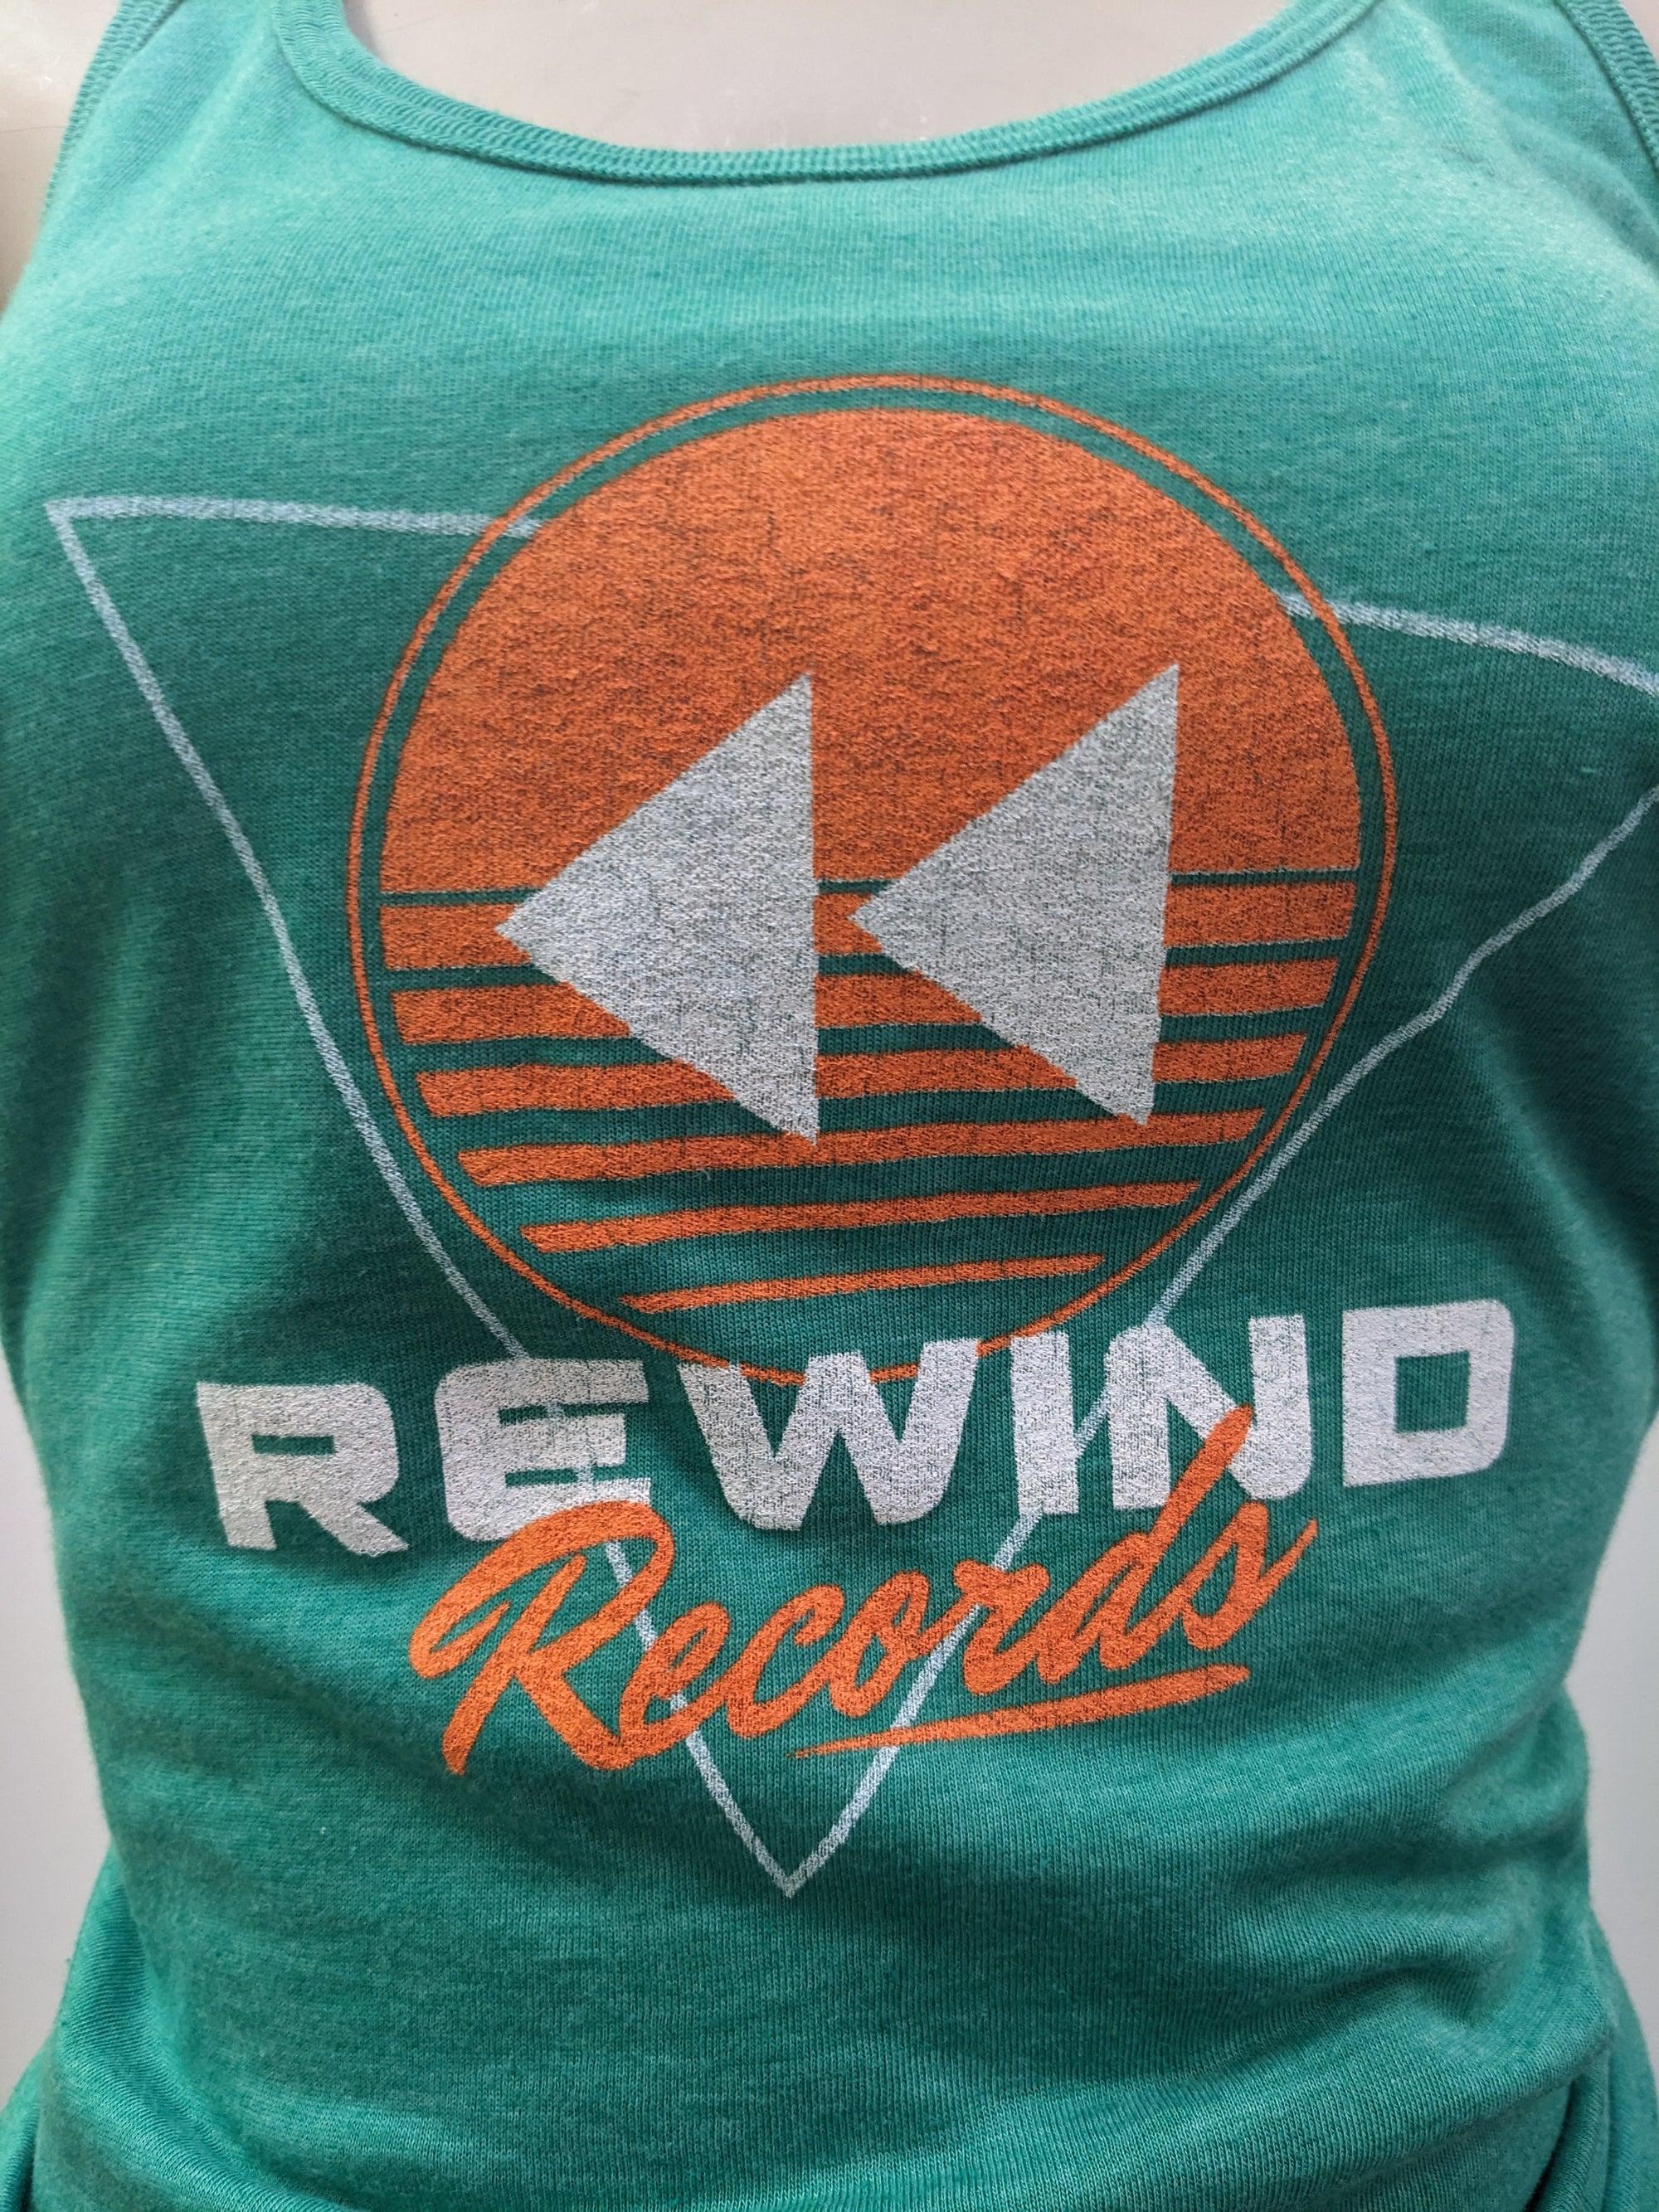 Rewind Records Tank - Large